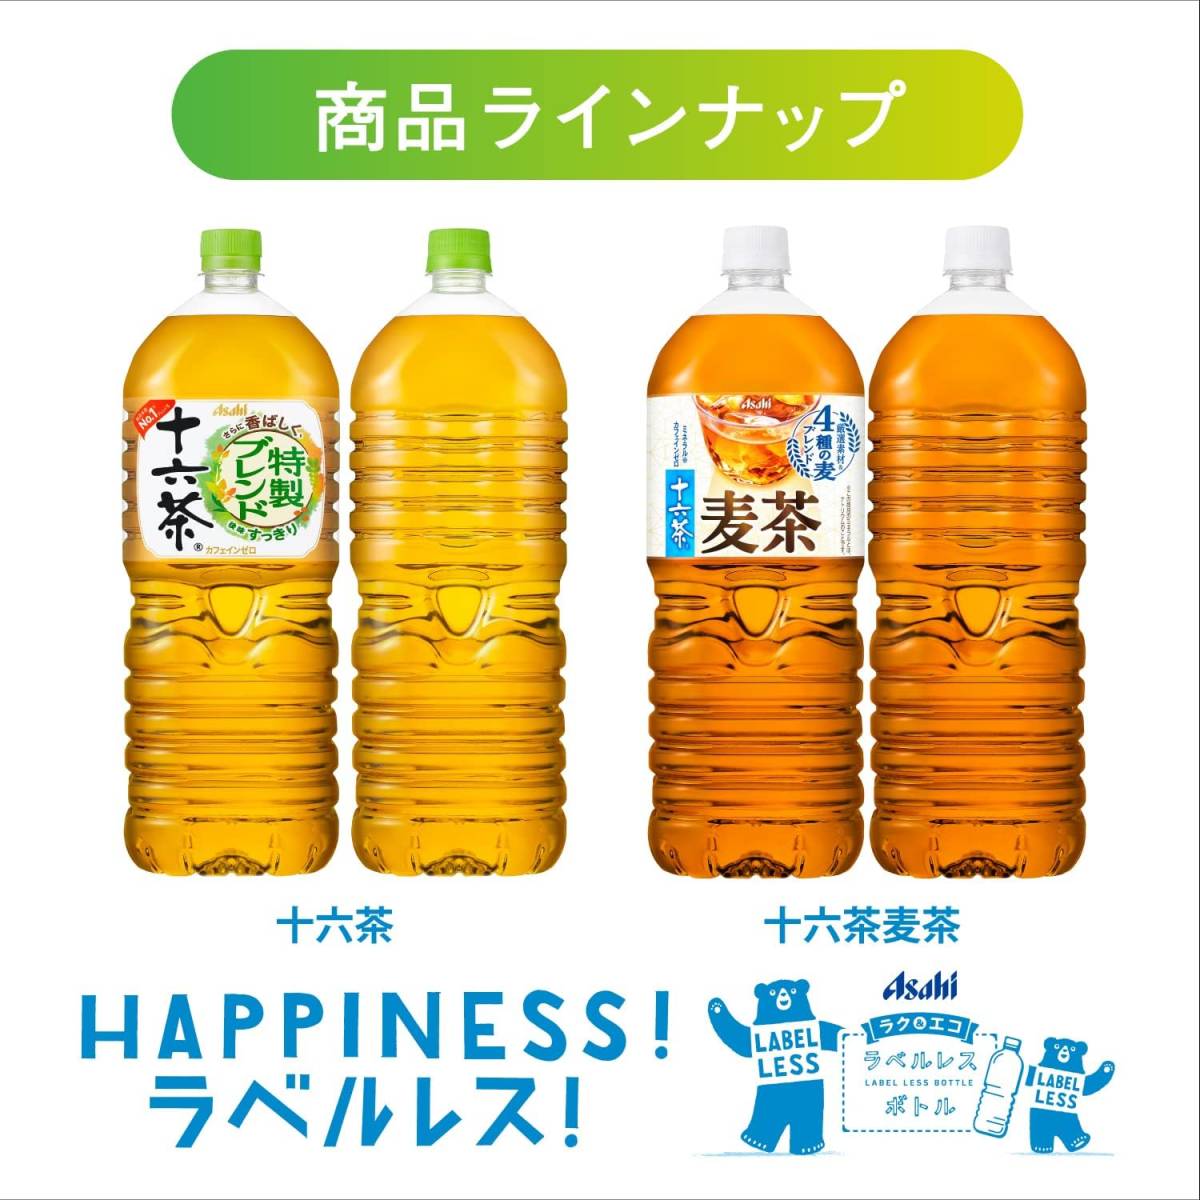 [2] этикетка отсутствует Asahi напиток Asahi 10 шесть чай этикетка отсутствует бутылка 2L×9шт.@[ чай ] [ non Cafe in ]